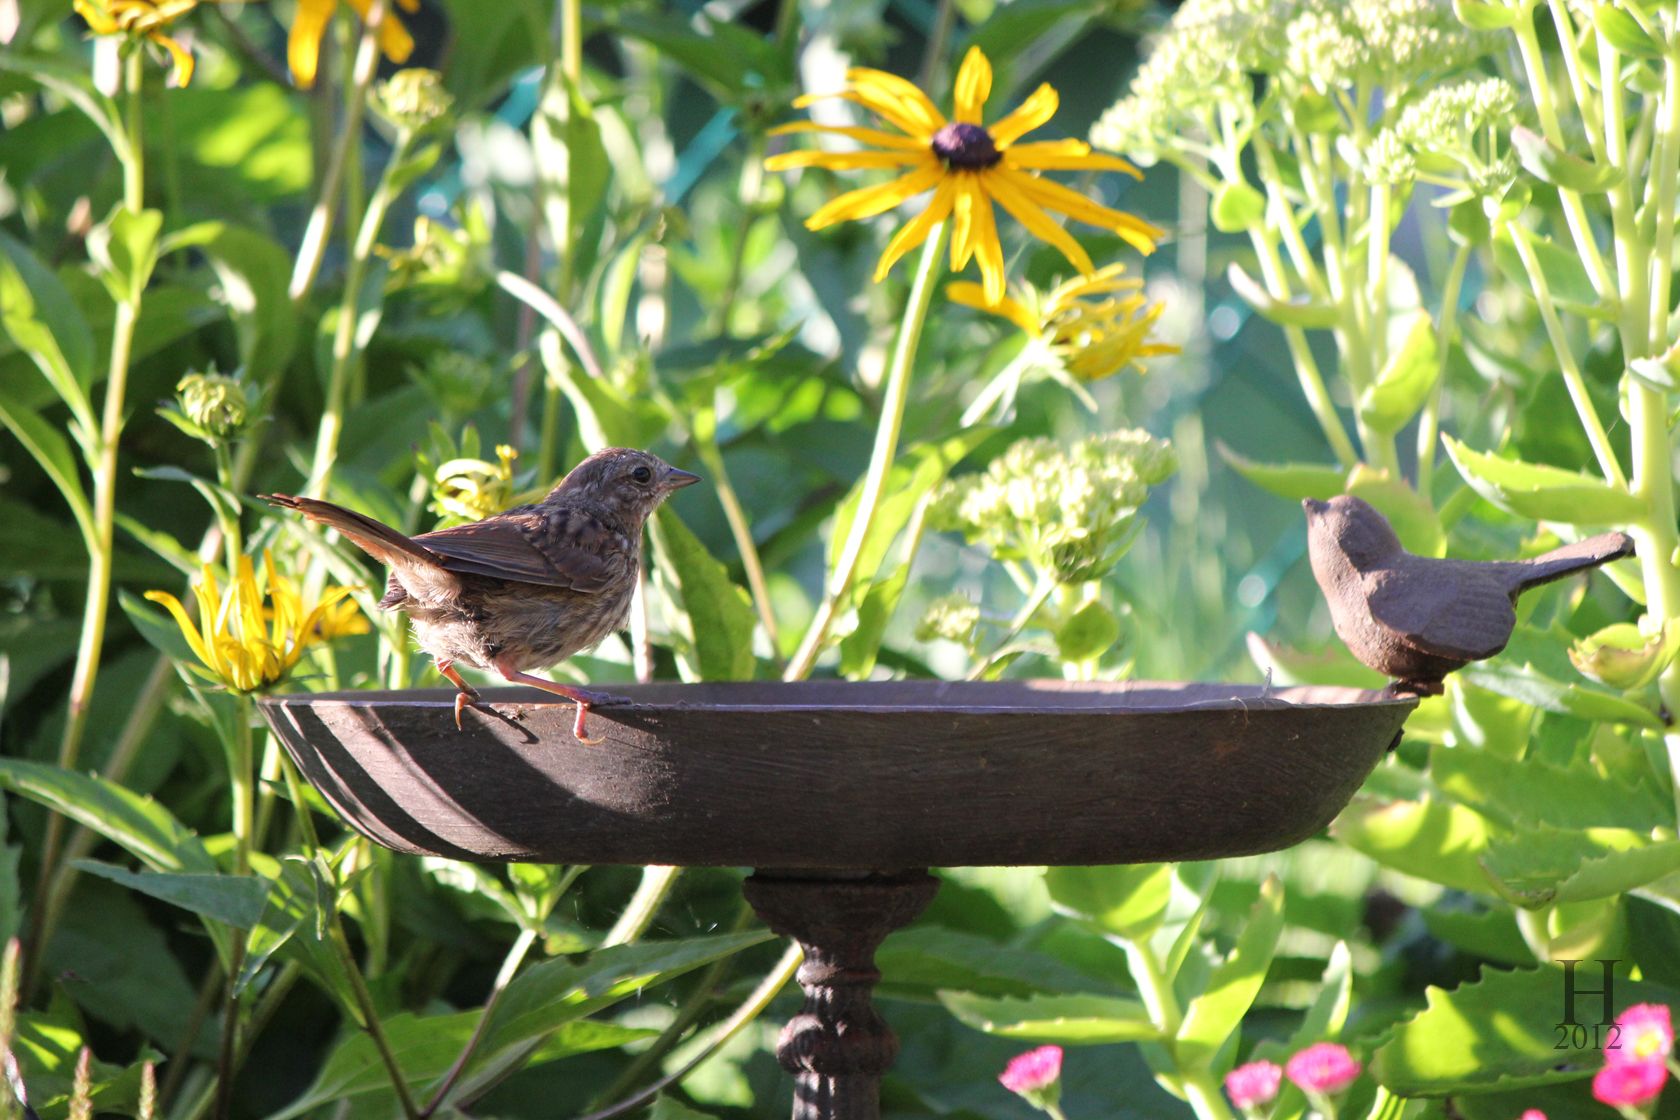 Birdgarden: trasforma il tuo giardino in un’oasi naturale